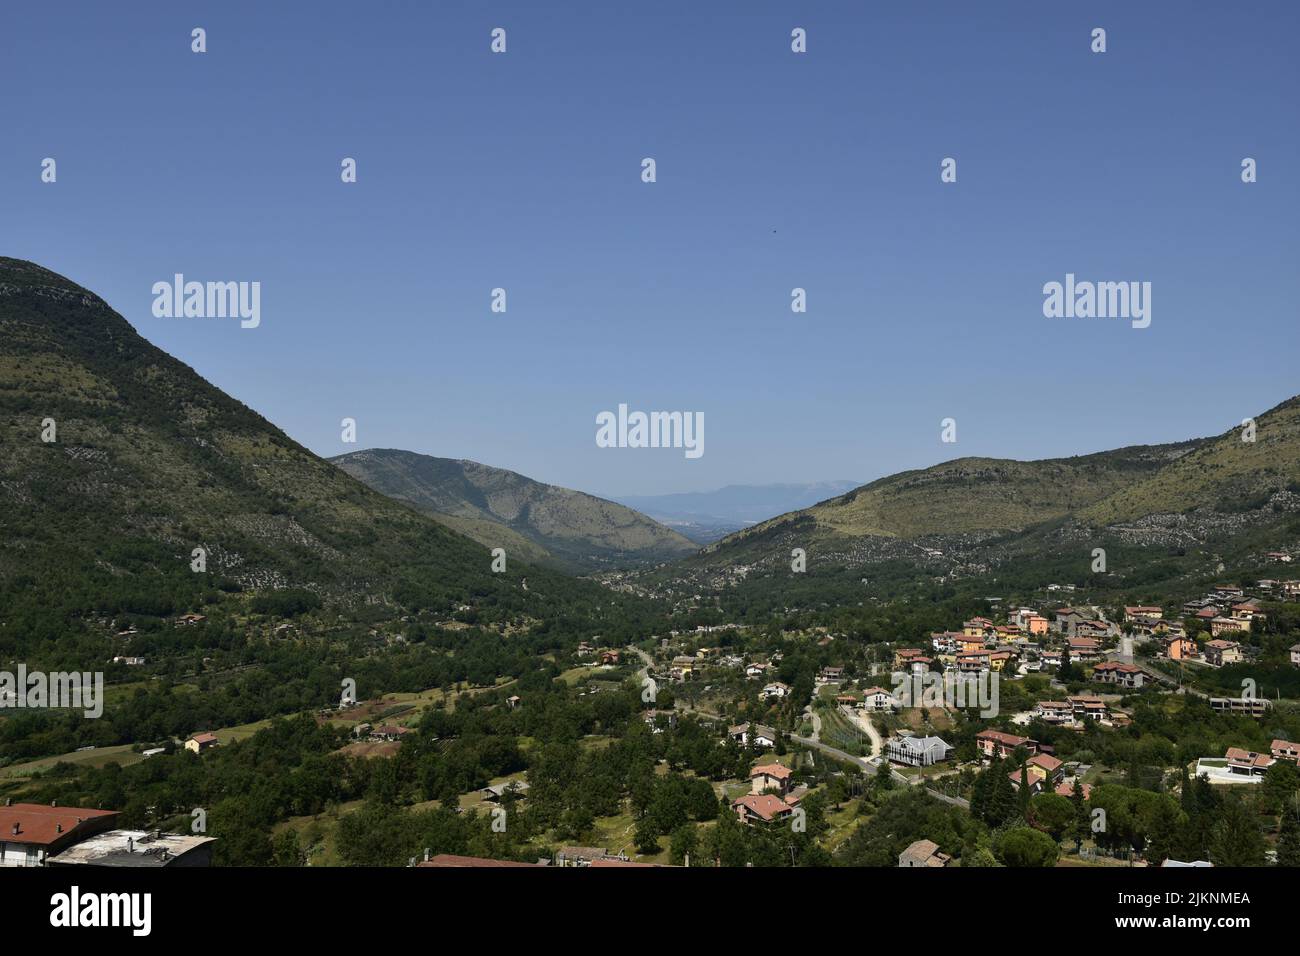 Der blaue Himmel über den grünen Hügeln von Vallecorsa aus gesehen, einem Dorf in der Region Latium in Italien Stockfoto